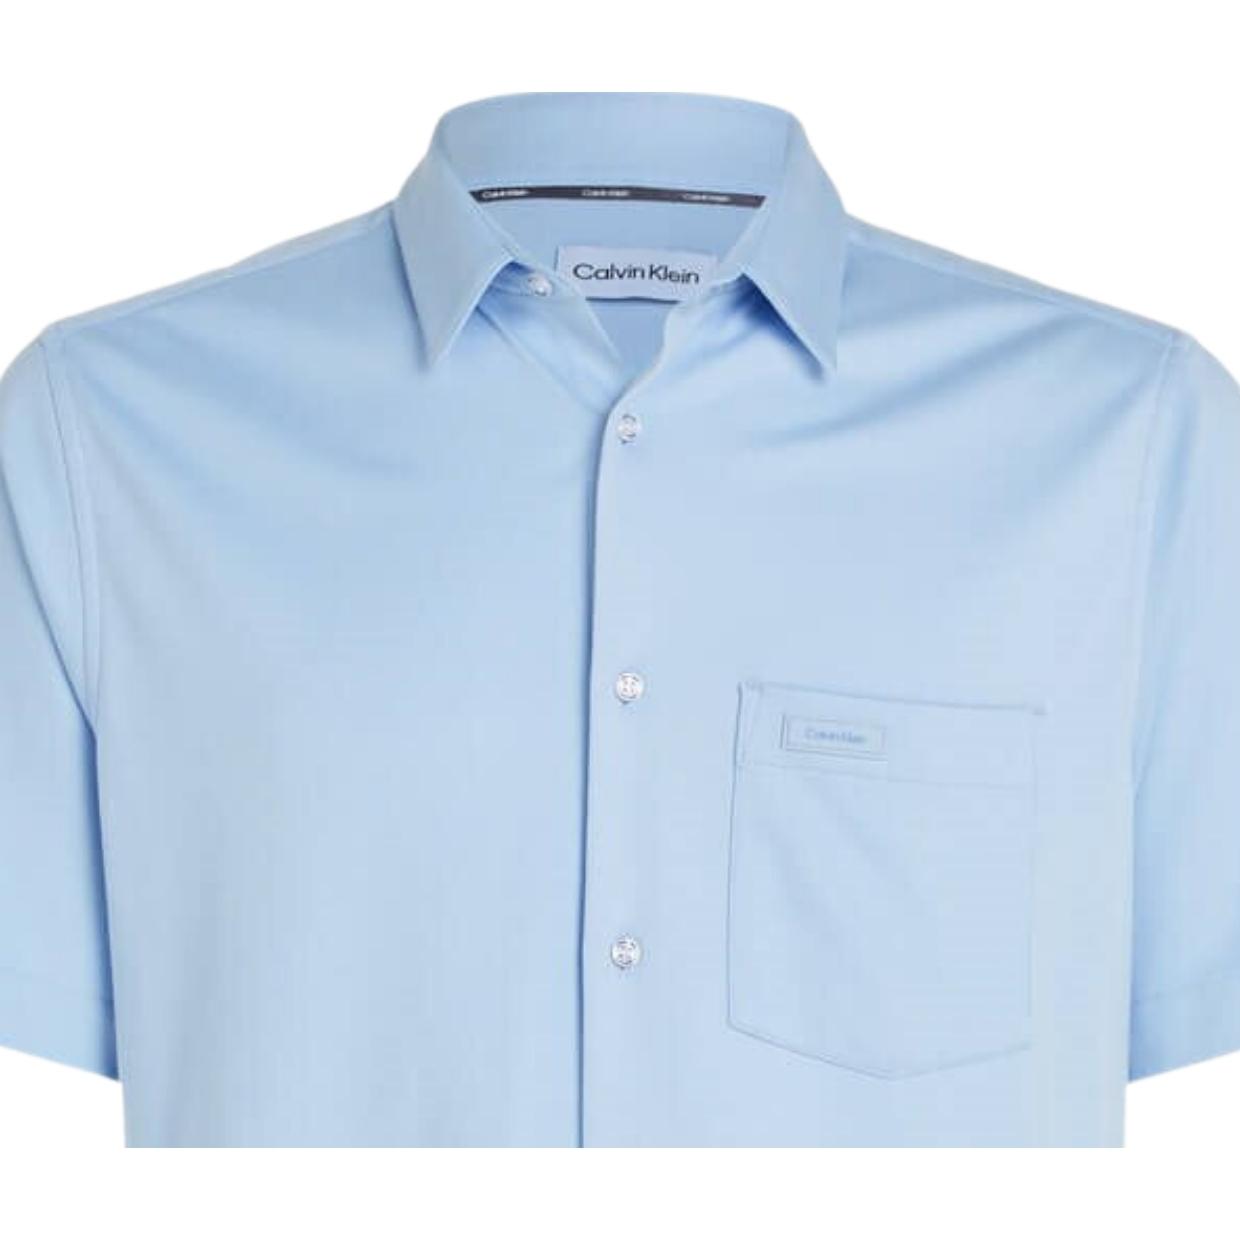 Calvin Klein Chest Pocket Short Sleeve Kentucky Blue Shirt